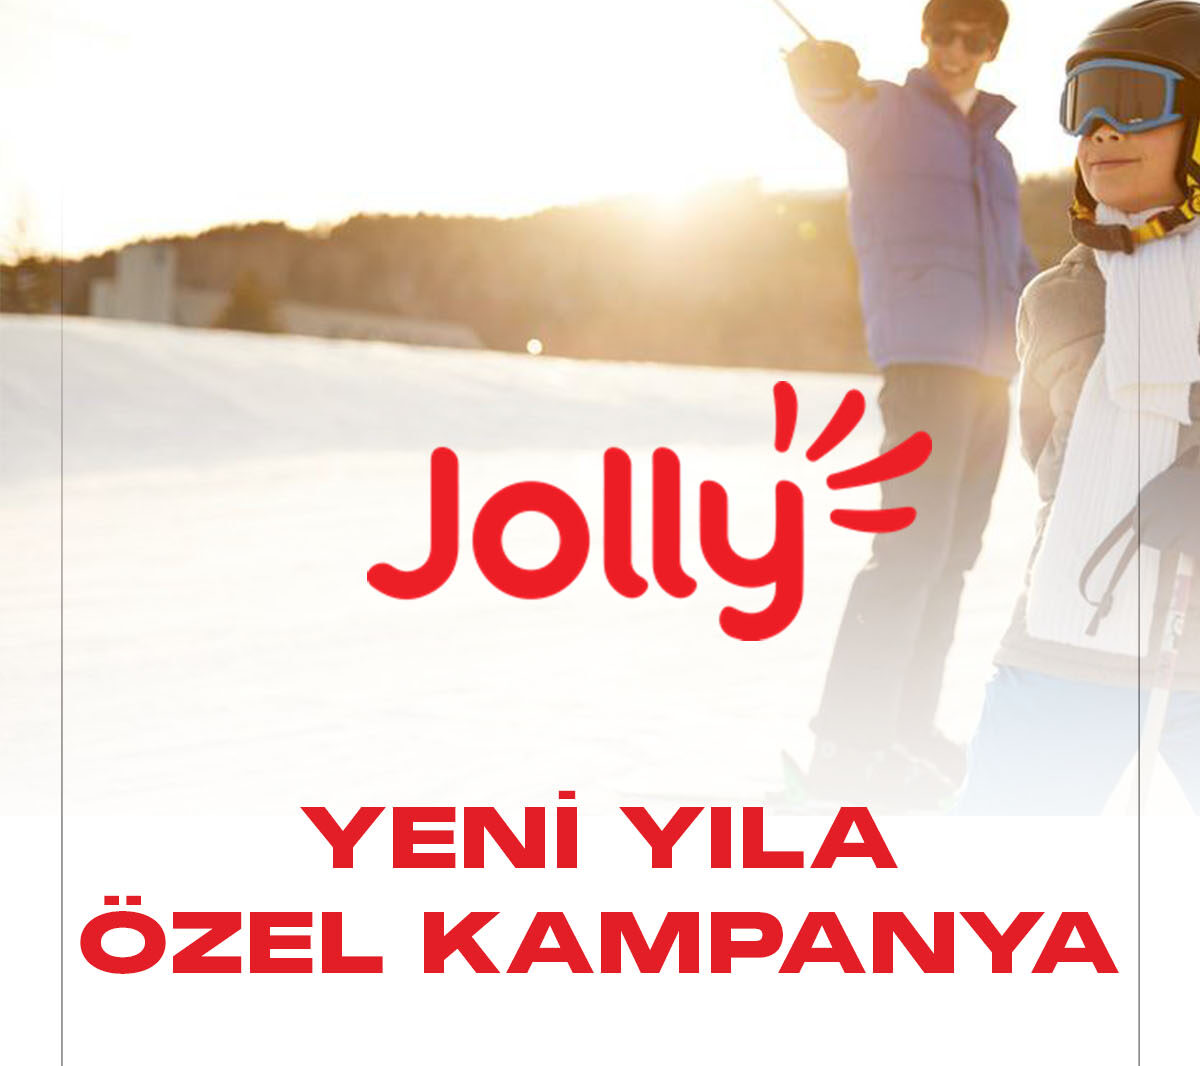 Jollytur tatil kampanyası başlattı. Jolly'den kış tatili ve yaz tatili yapmak isteyenler için indirimli tatil fırsatları sunuyor.